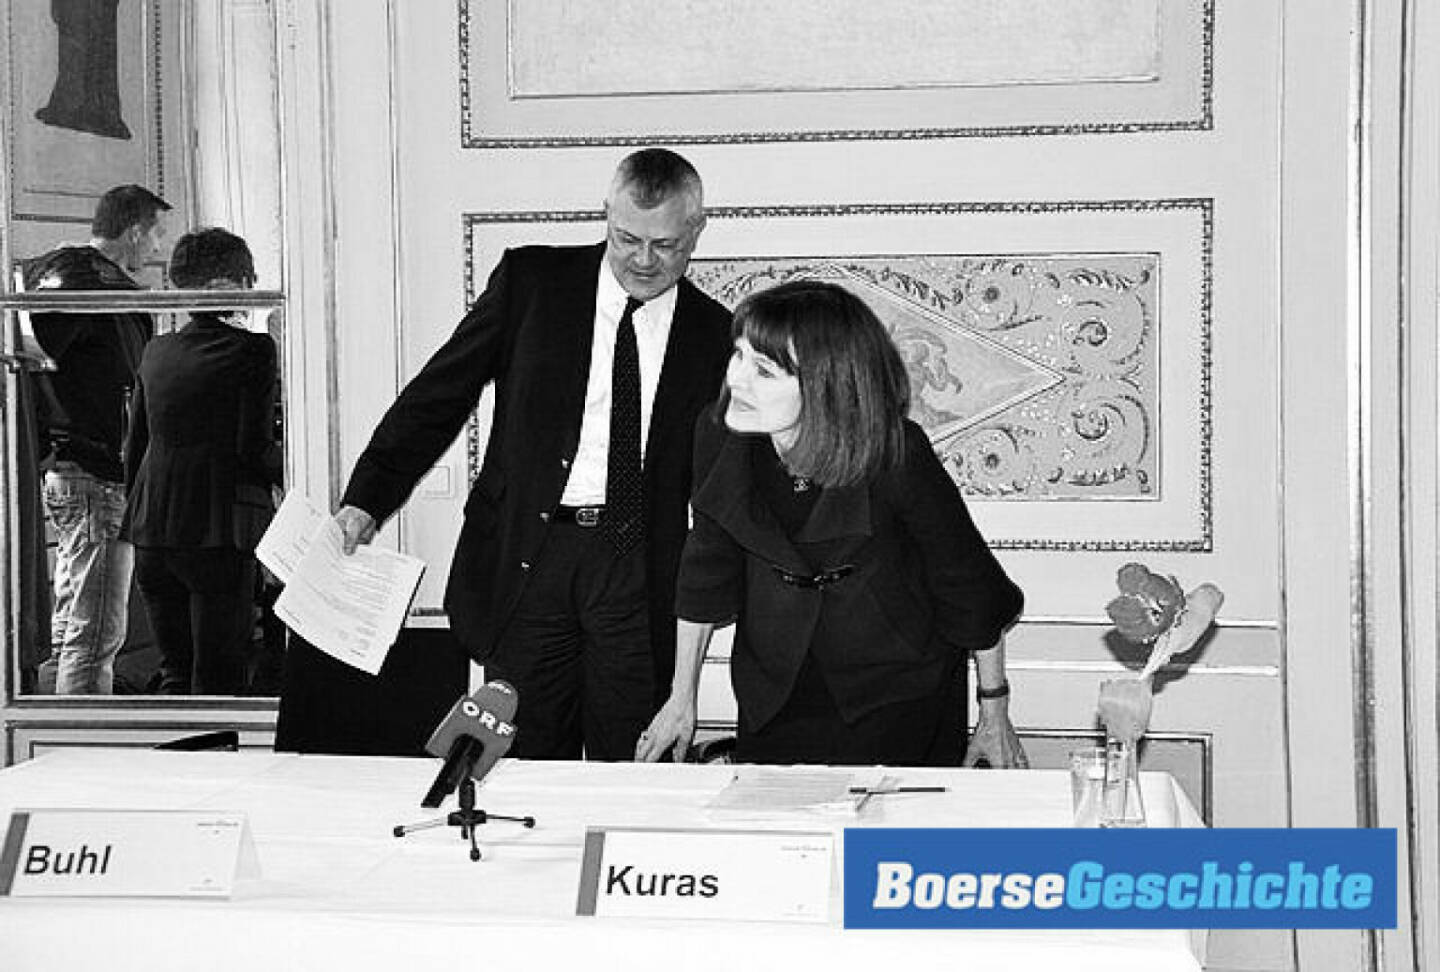 #boersegeschichte: Birgit Kuras, Michael Buhl: Am 27.3.2012 nimmt ein neues Vorstandsteam der Wiener Börse Platz.